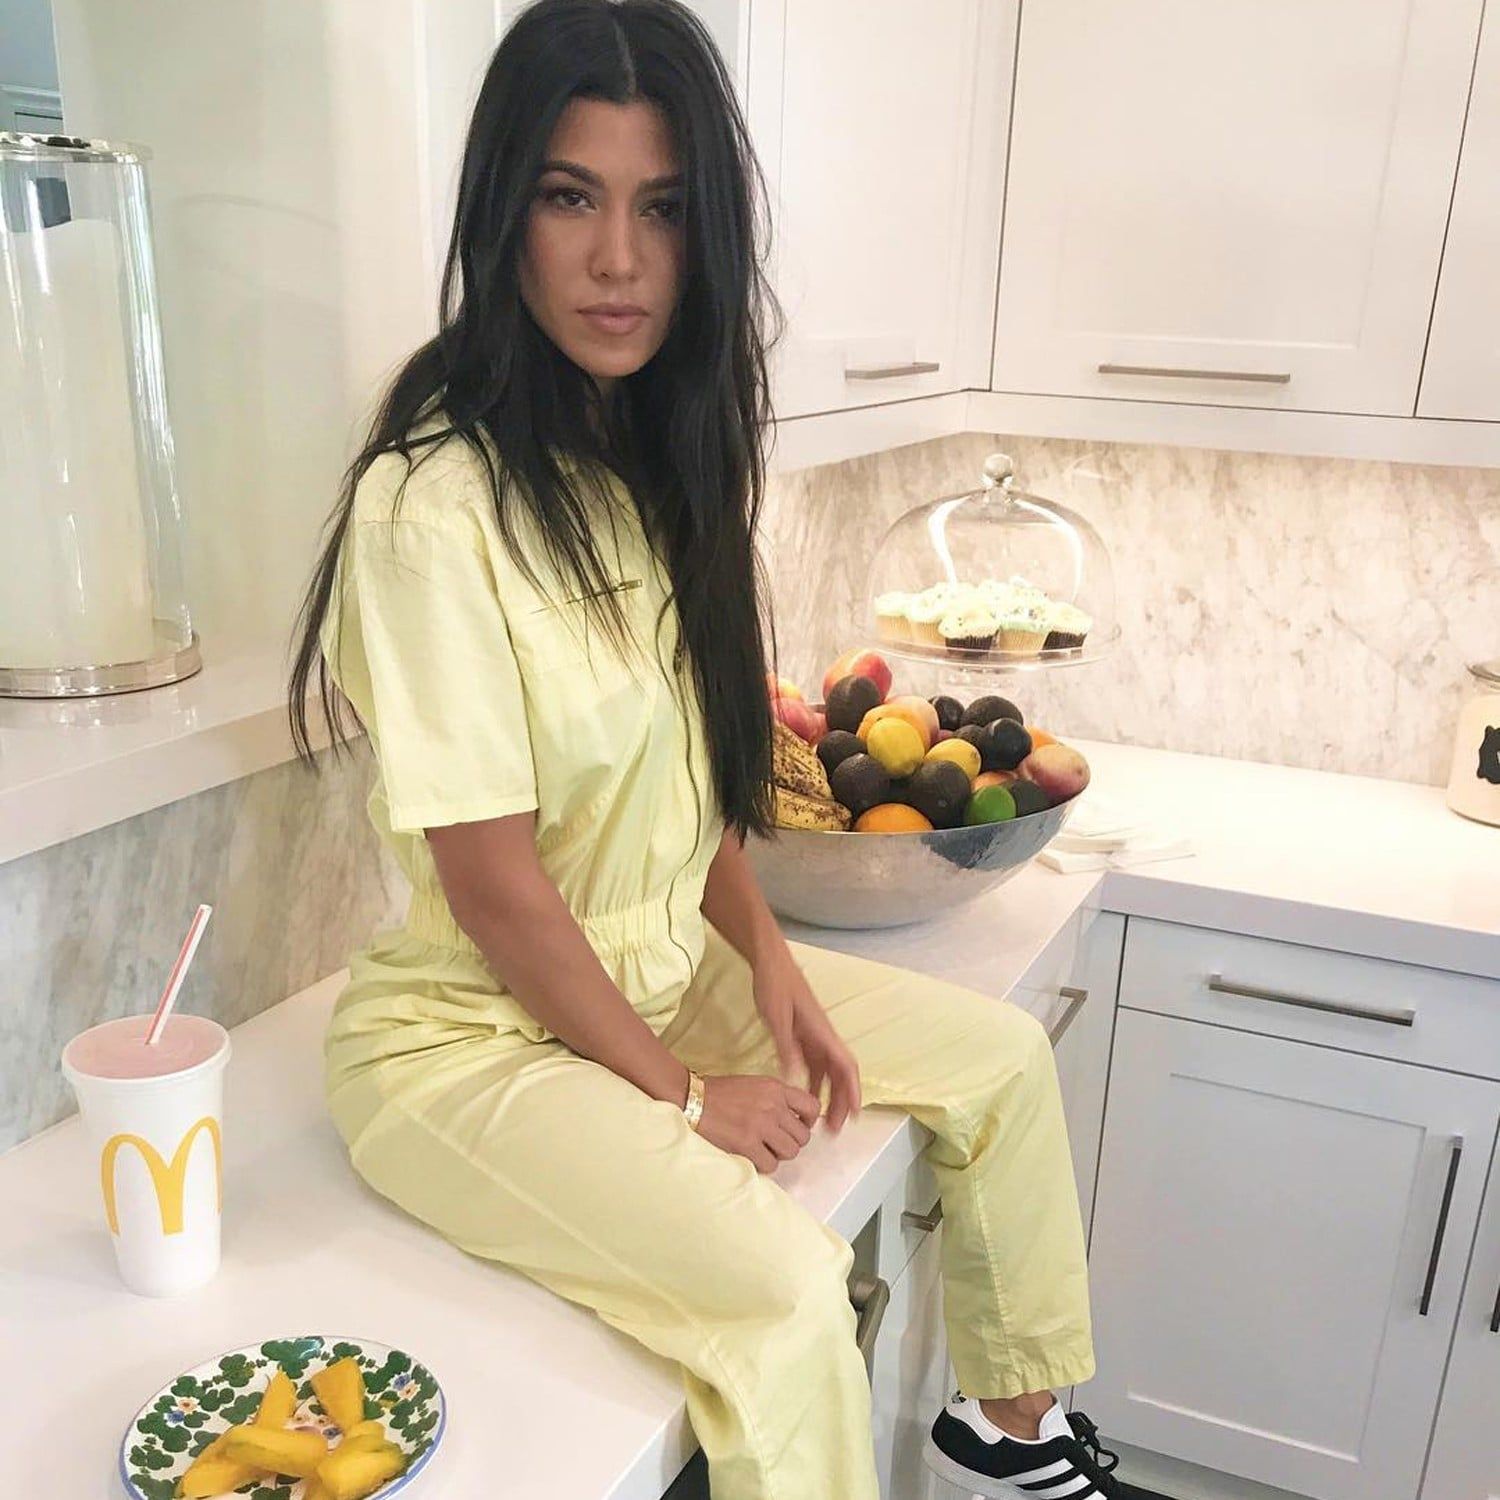 Kourtney Kardashian on kitchen counters